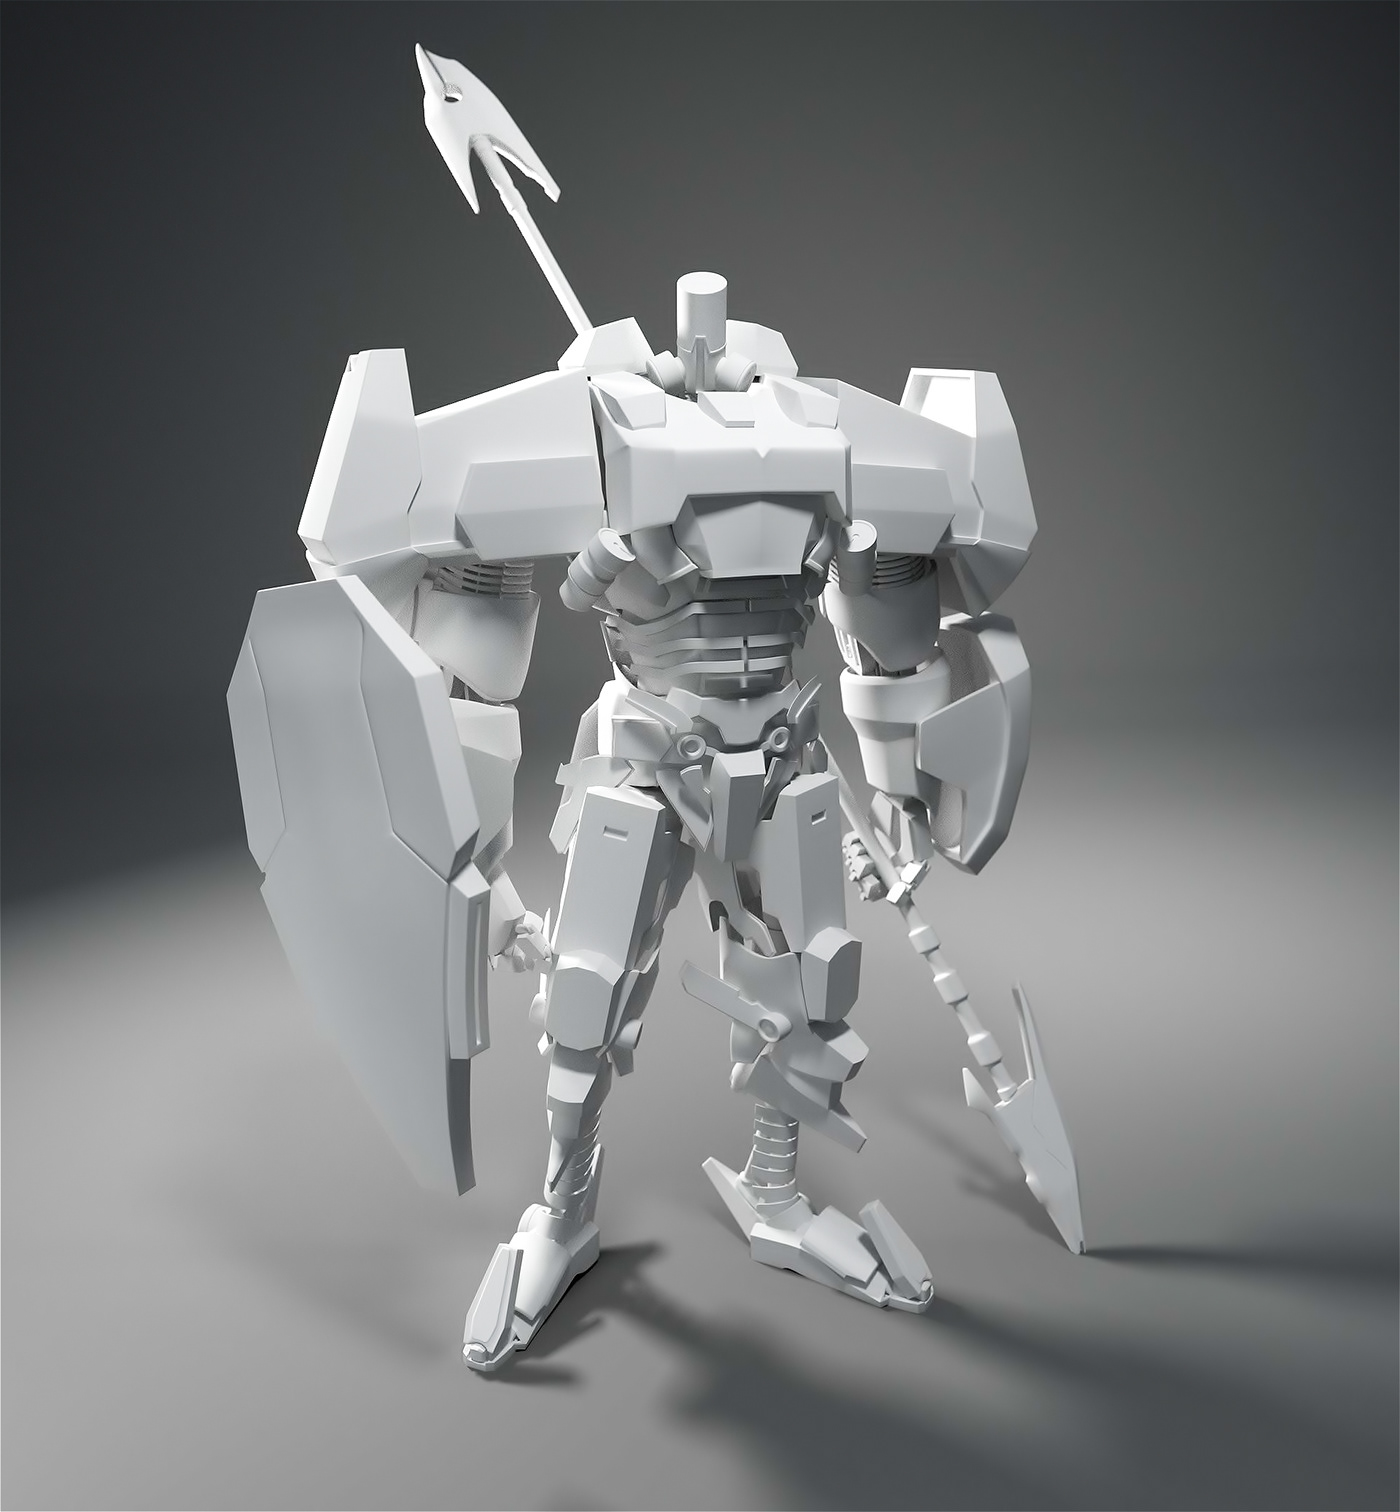 blender 3D materials textures mech Heavy robot rendering